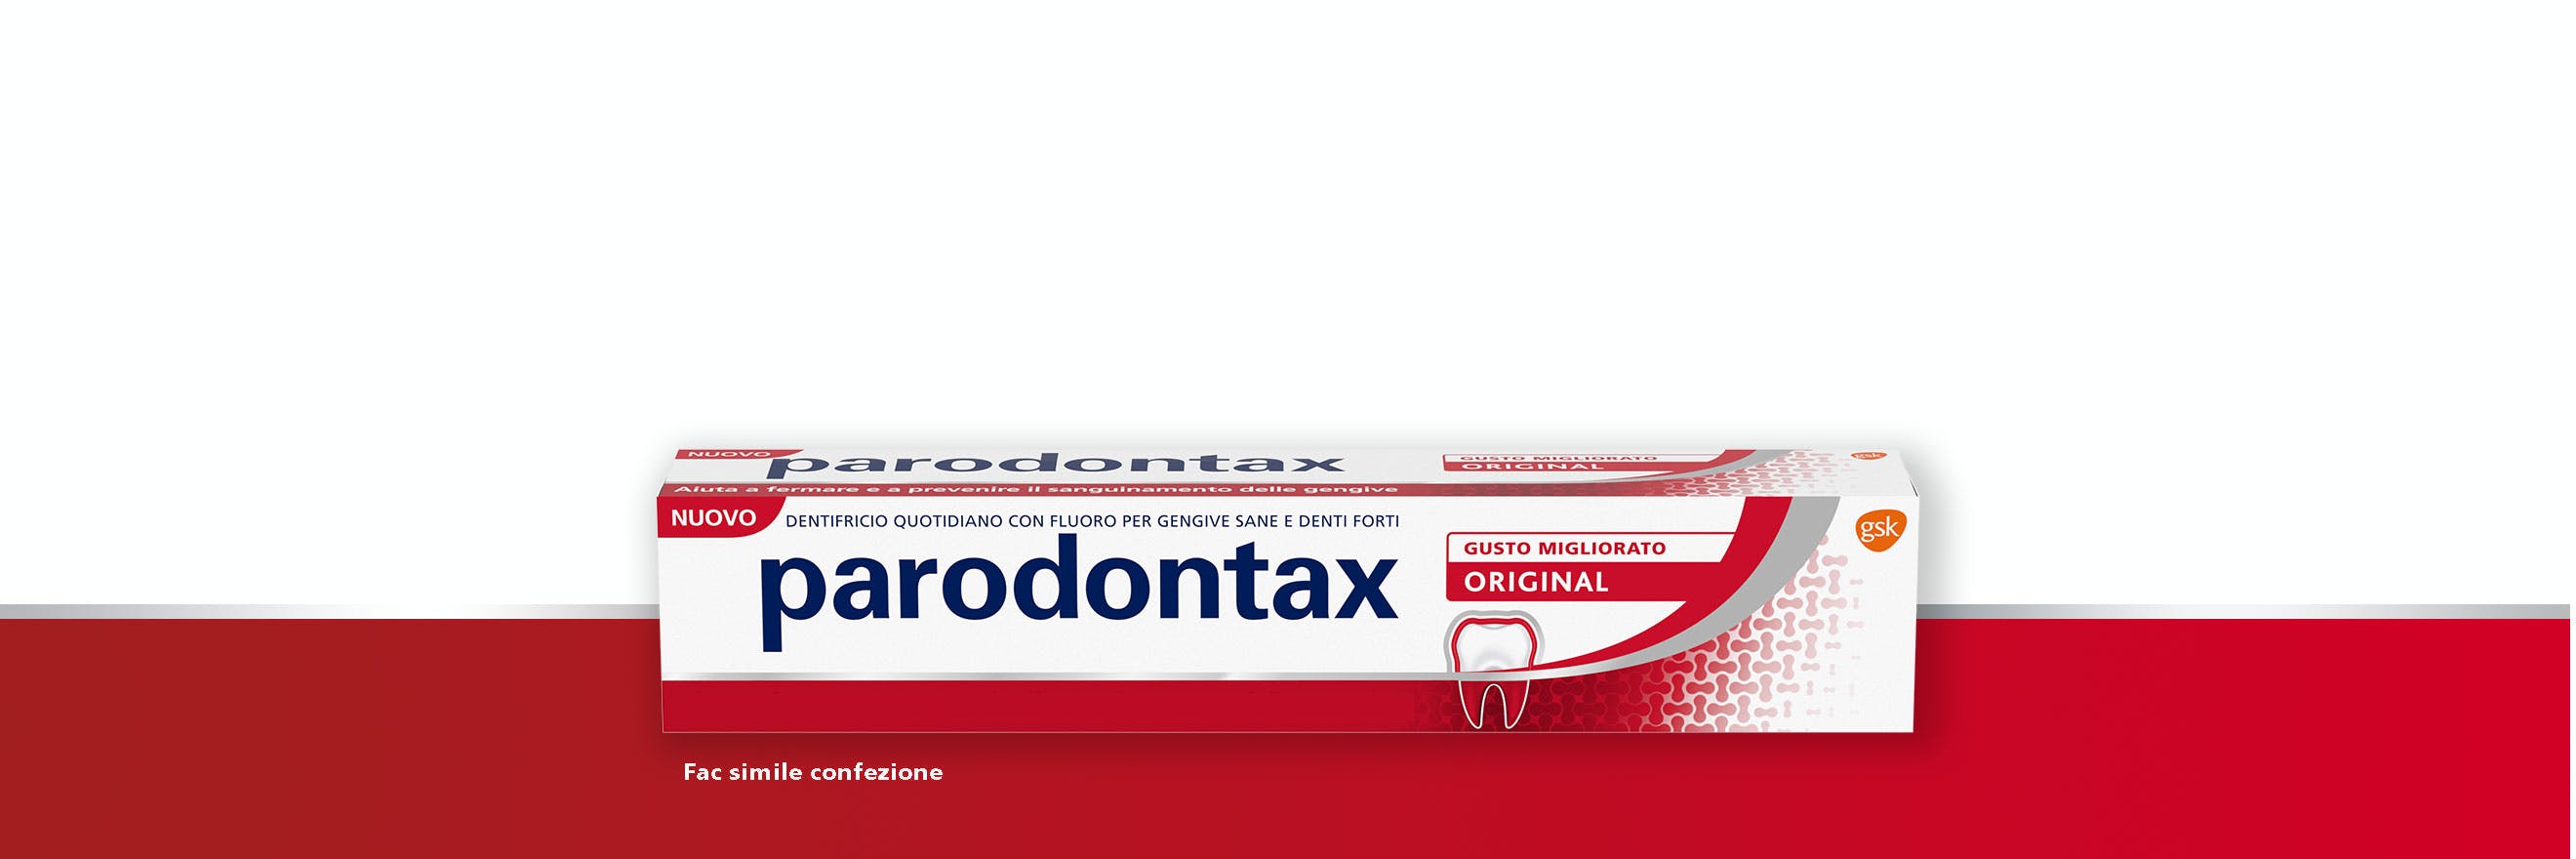 Il dentifricio parodontax Original ad uso quotidiano